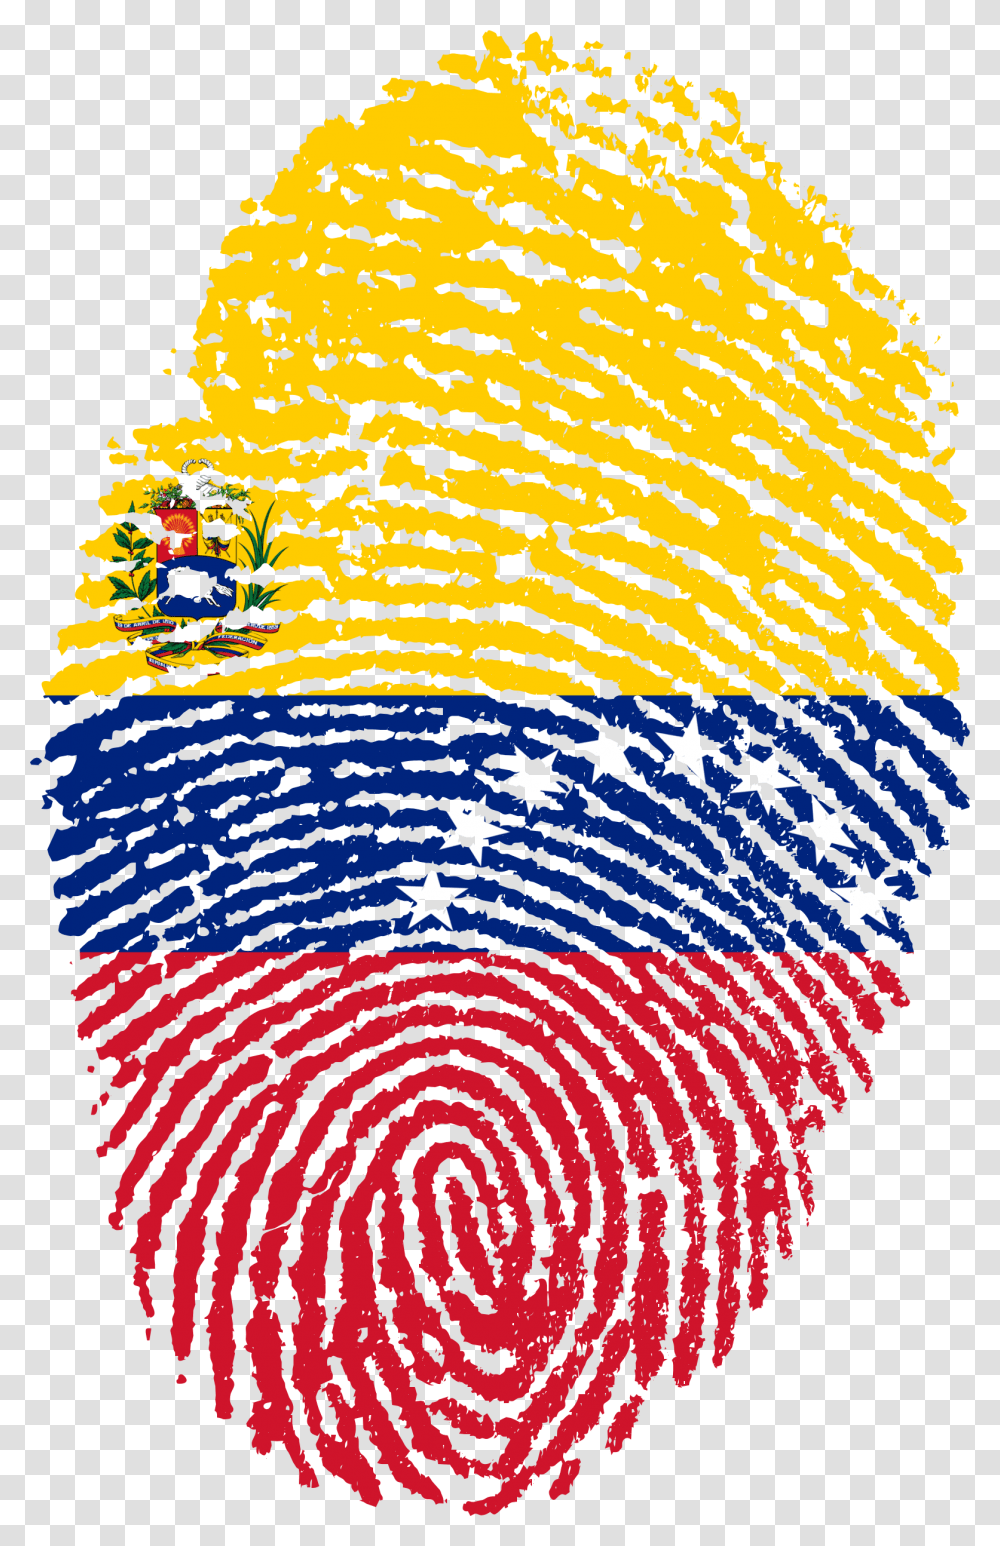 Bandera De Usa Venezuela Fingerprint, Rug, Modern Art Transparent Png